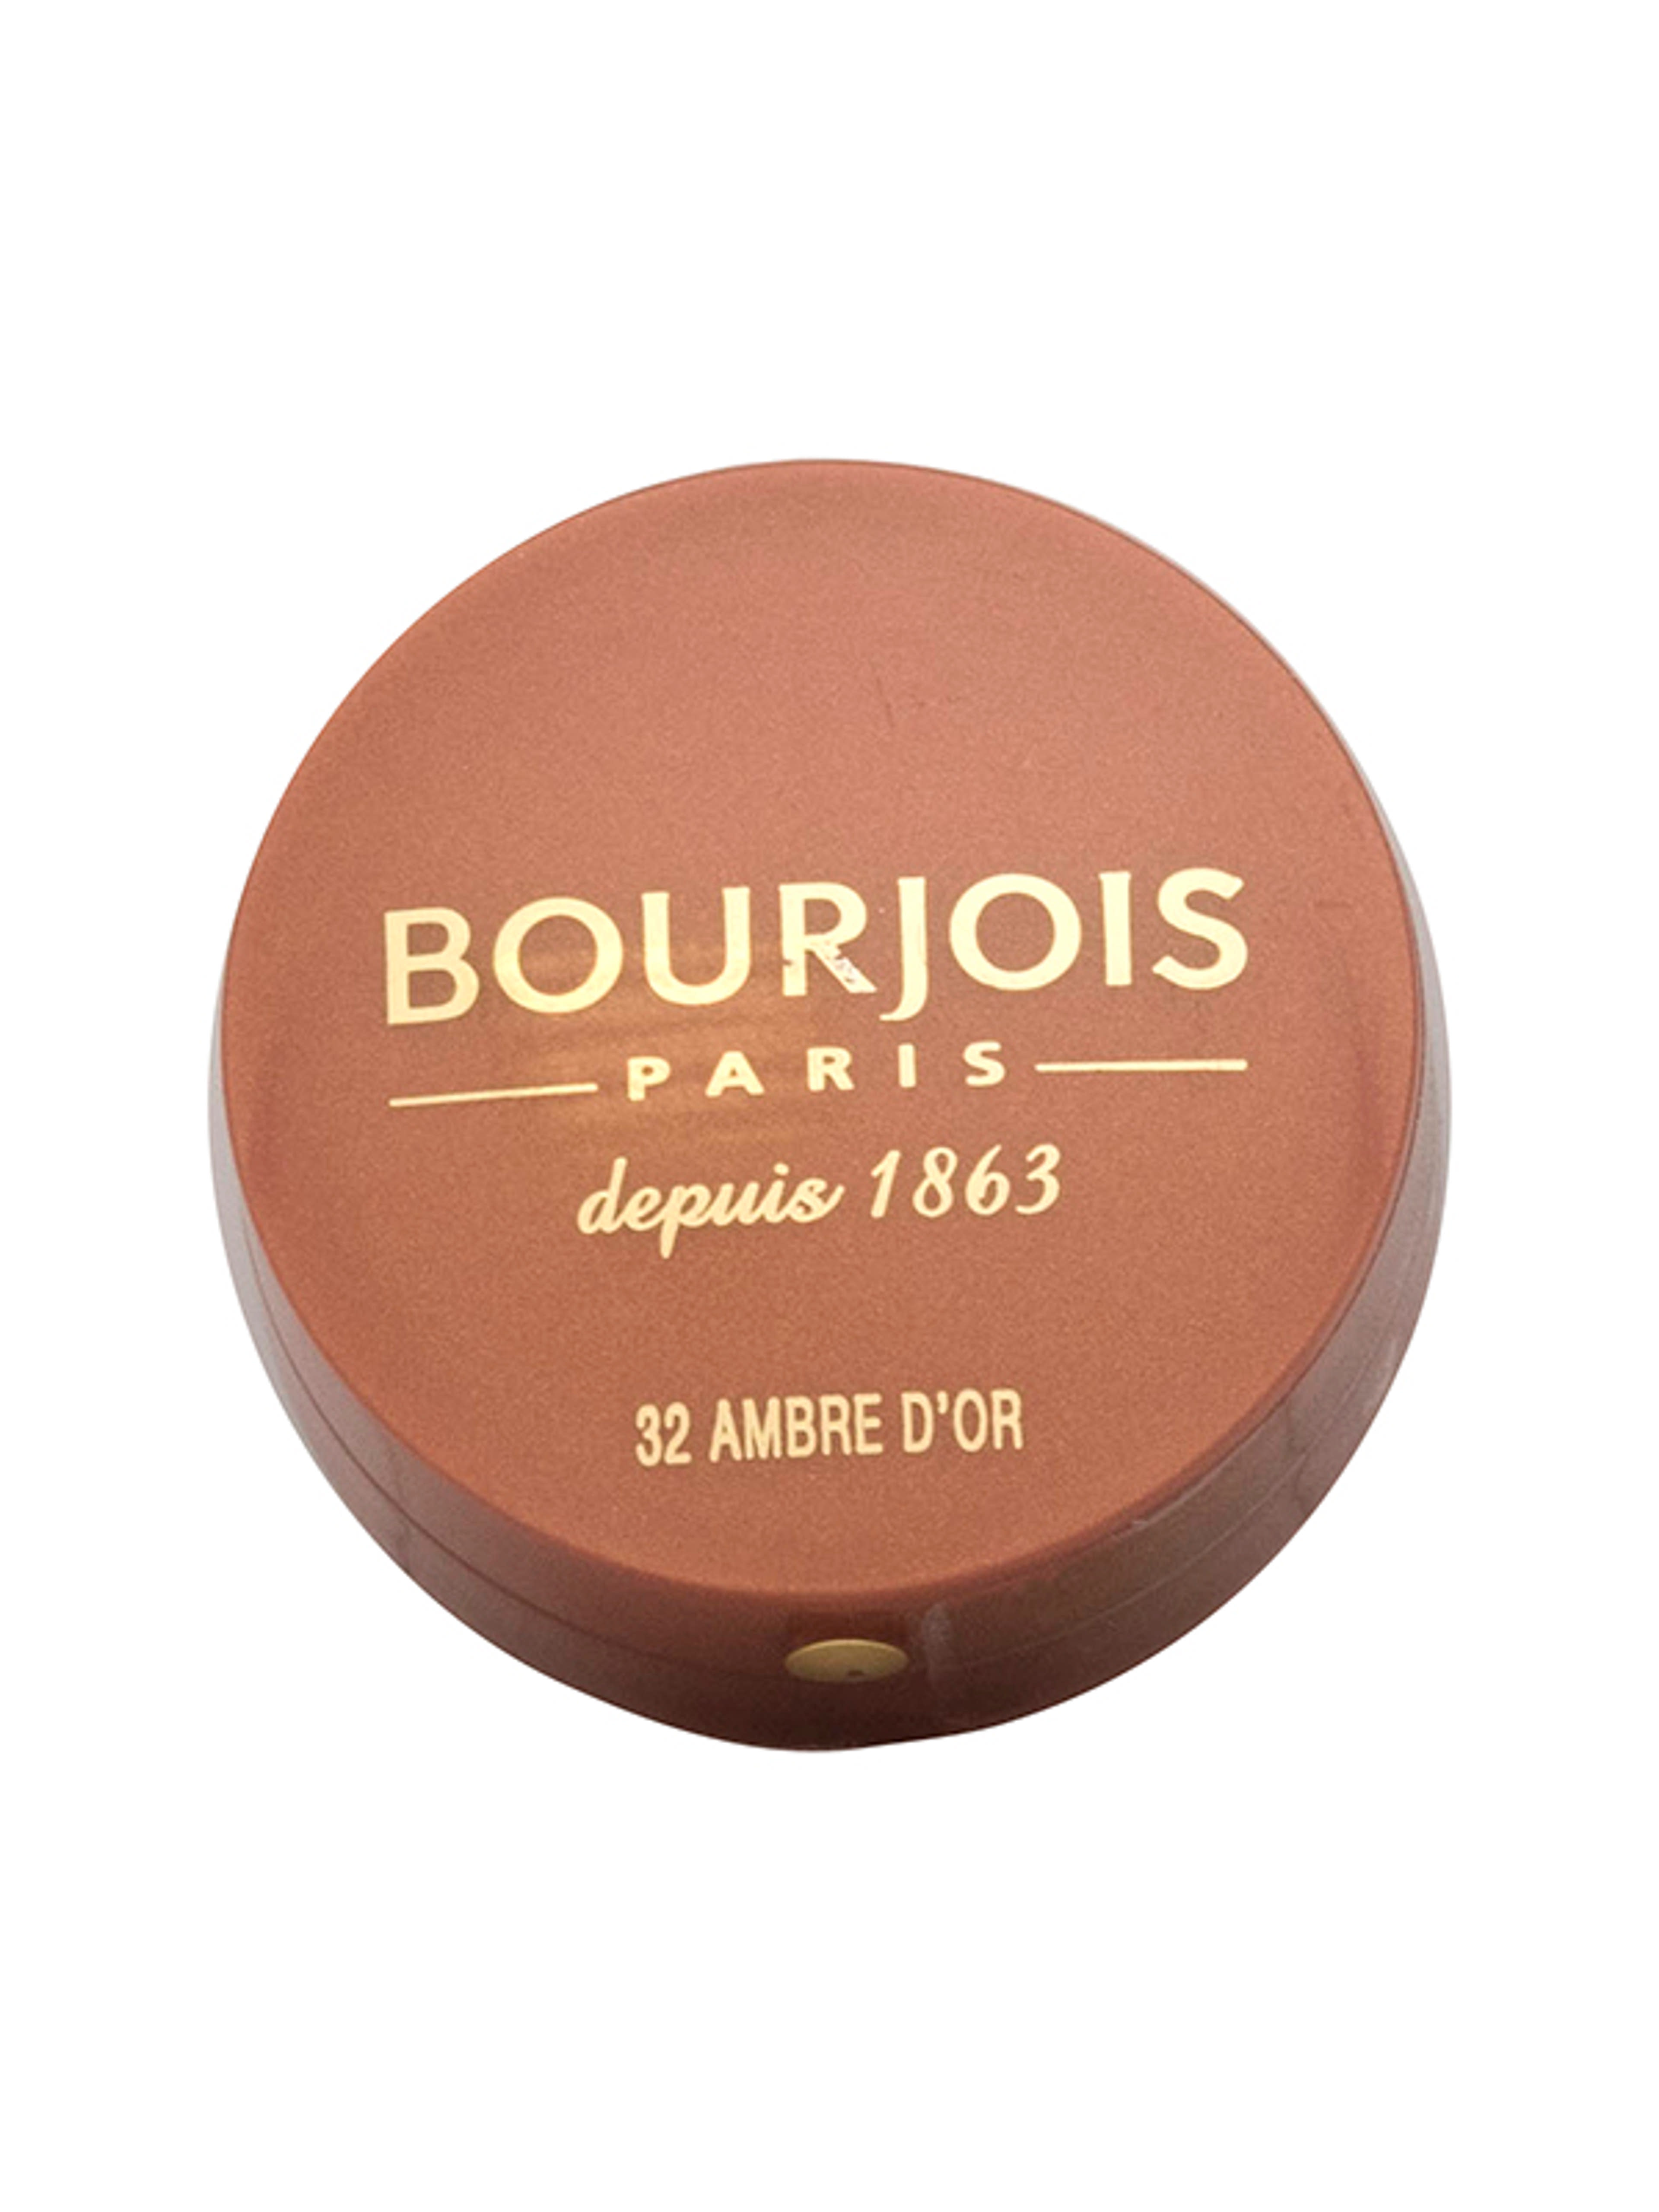 Bourjois pirosító little round pot /32 - 1 db